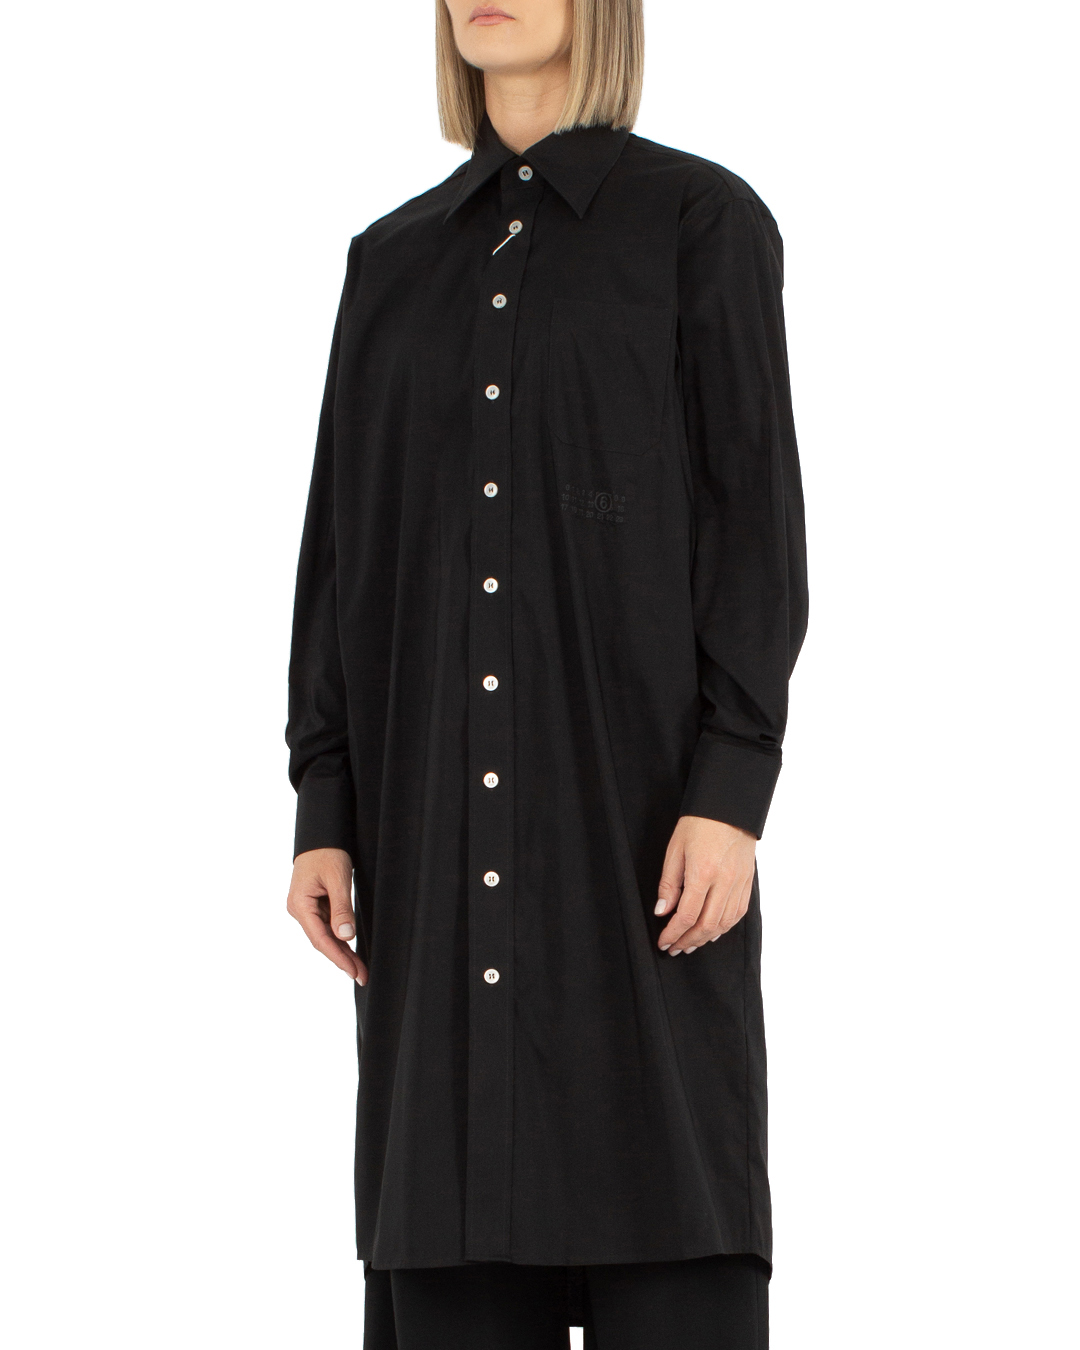 платье MM6 Maison Margiela SH2DT0001 черный 44, размер 44 - фото 3